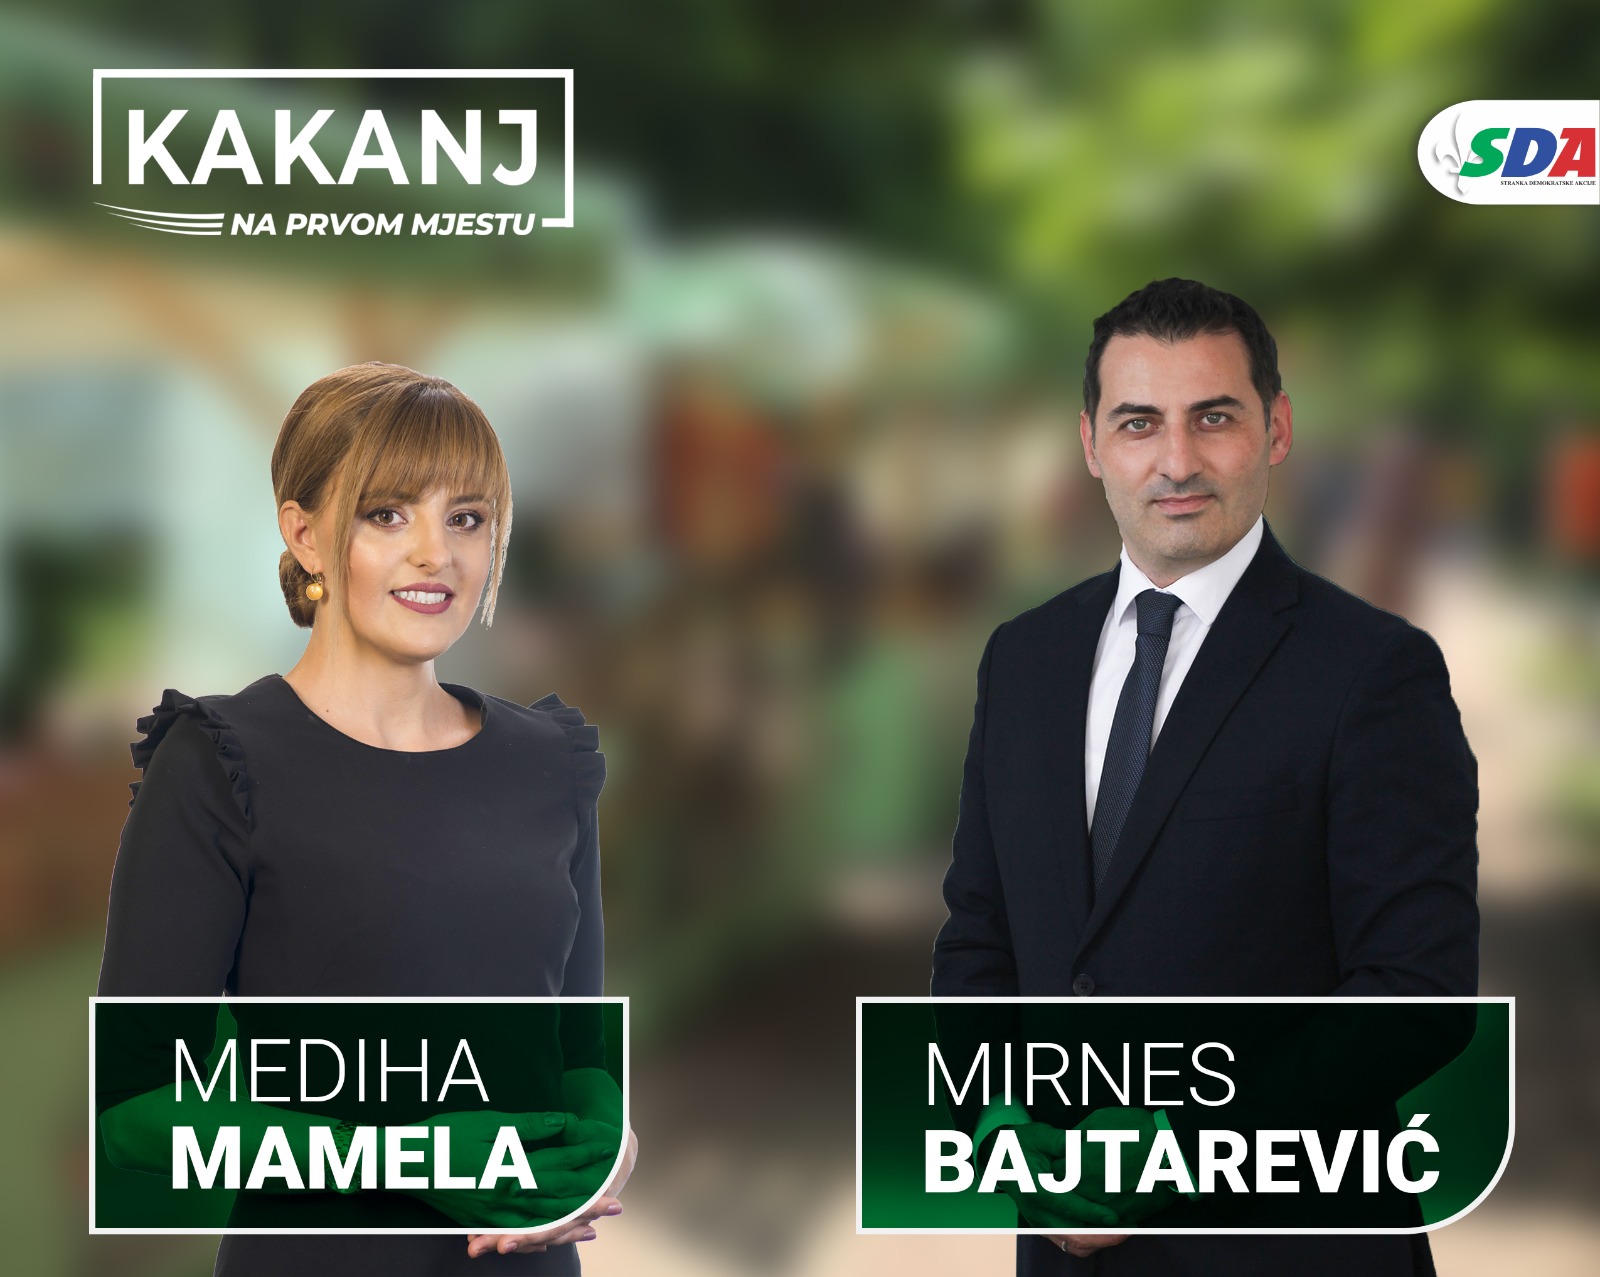 Mediha Mamela: Mirnes Bajtarević je čovjek skromne naravi, velikih dostignuća, a što je dokazao u svojim dosadašnjim angažmanima